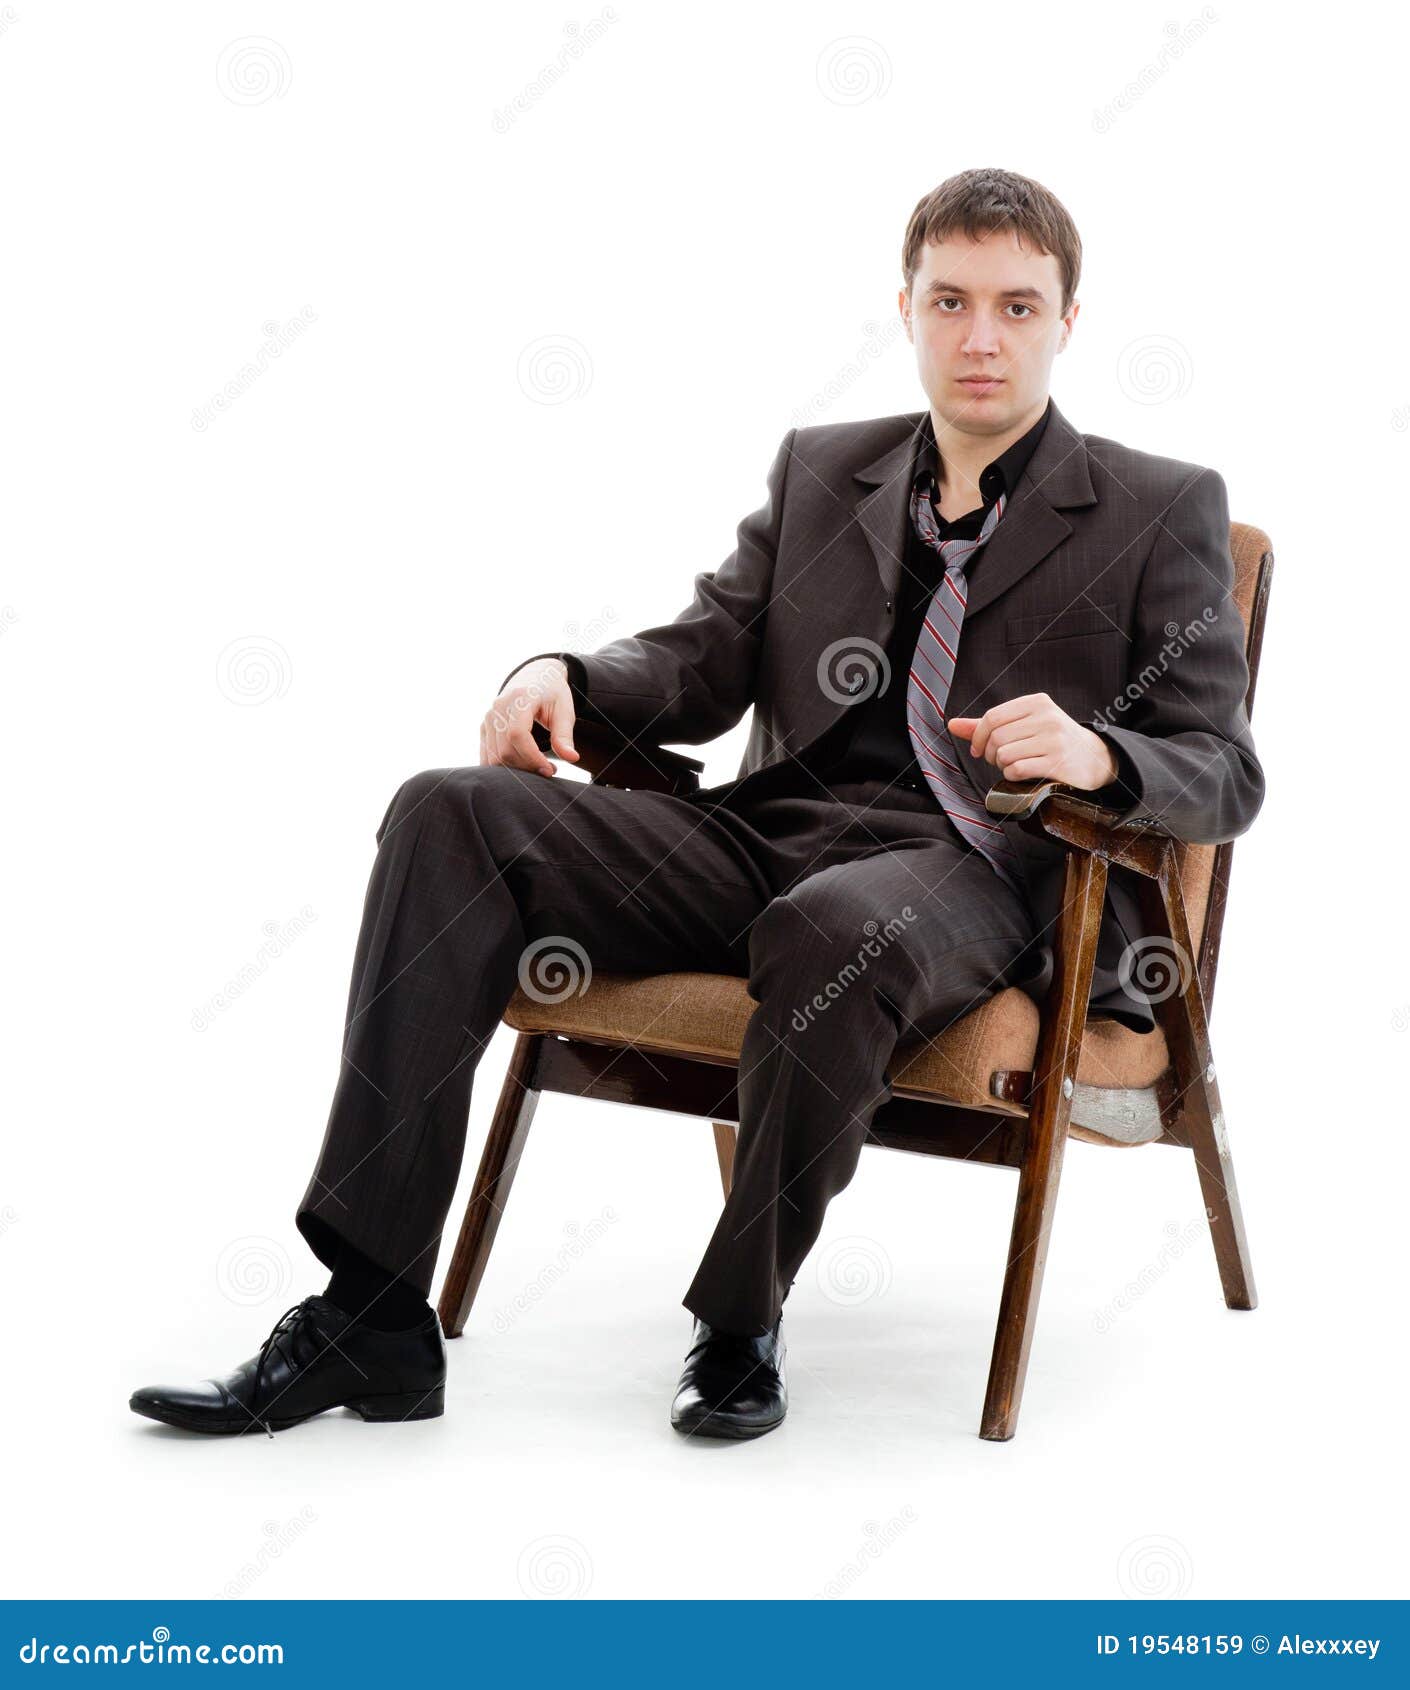 Мужчина сидит расставив ноги. Мужчина в кресле. Человек в костюме сидит. Мужчина в кресле в костюме. Человек в костюме сидит на стуле.